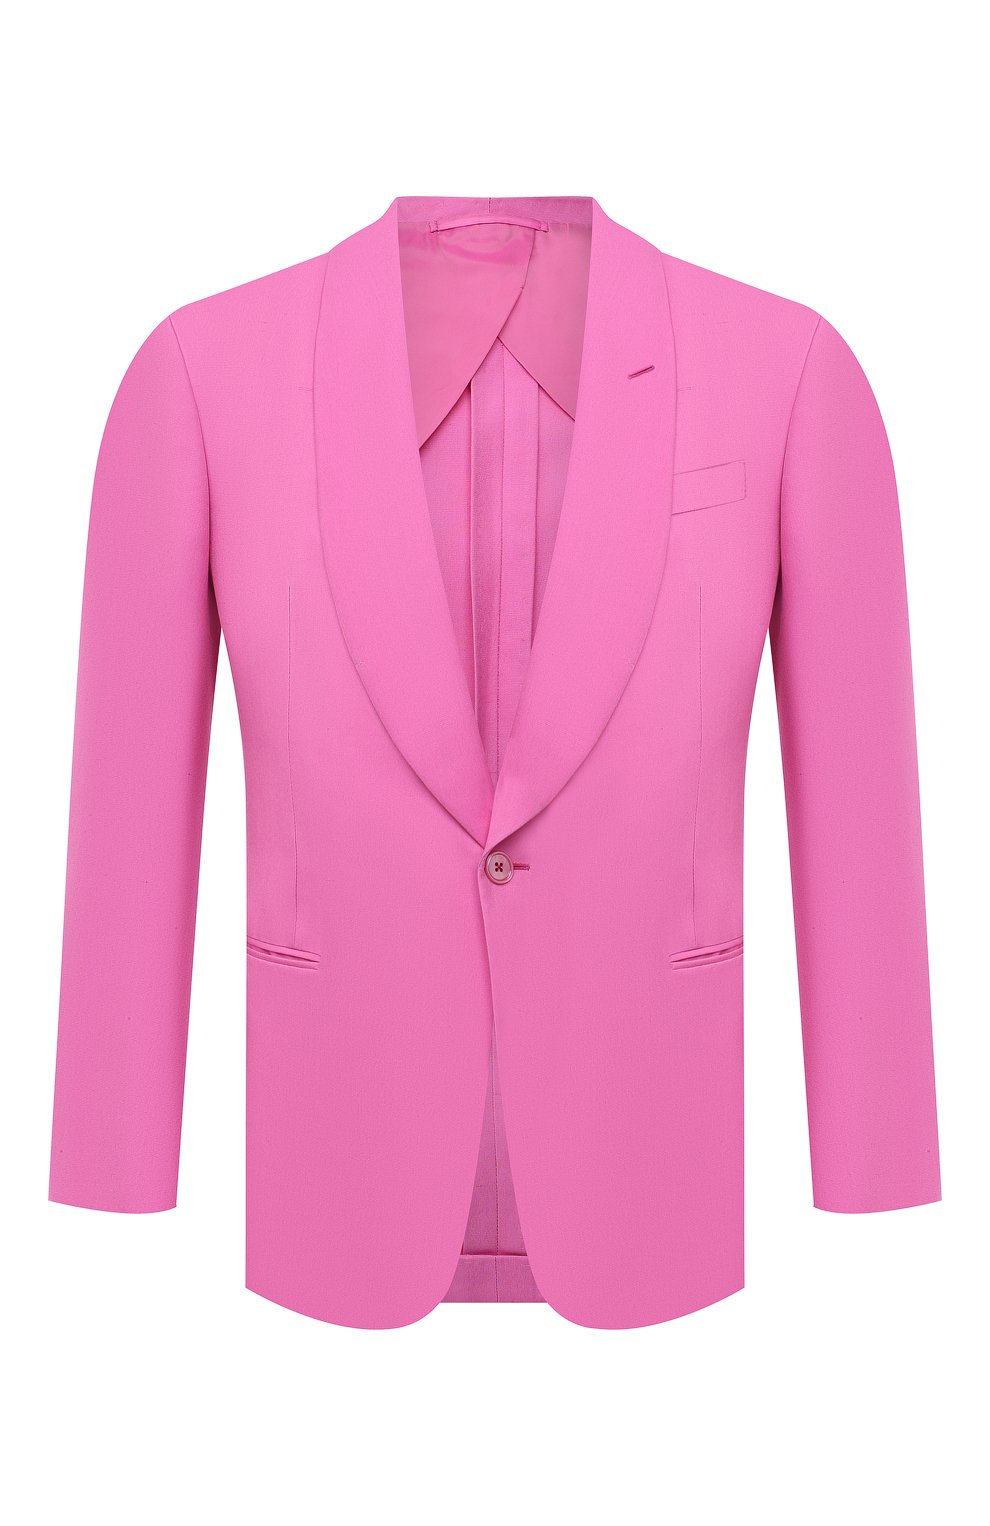 Пиджаки Ralph Lauren, Шелковый пиджак Ralph Lauren, Италия, Розовый, Шелк: 100%;, 11710527  - купить